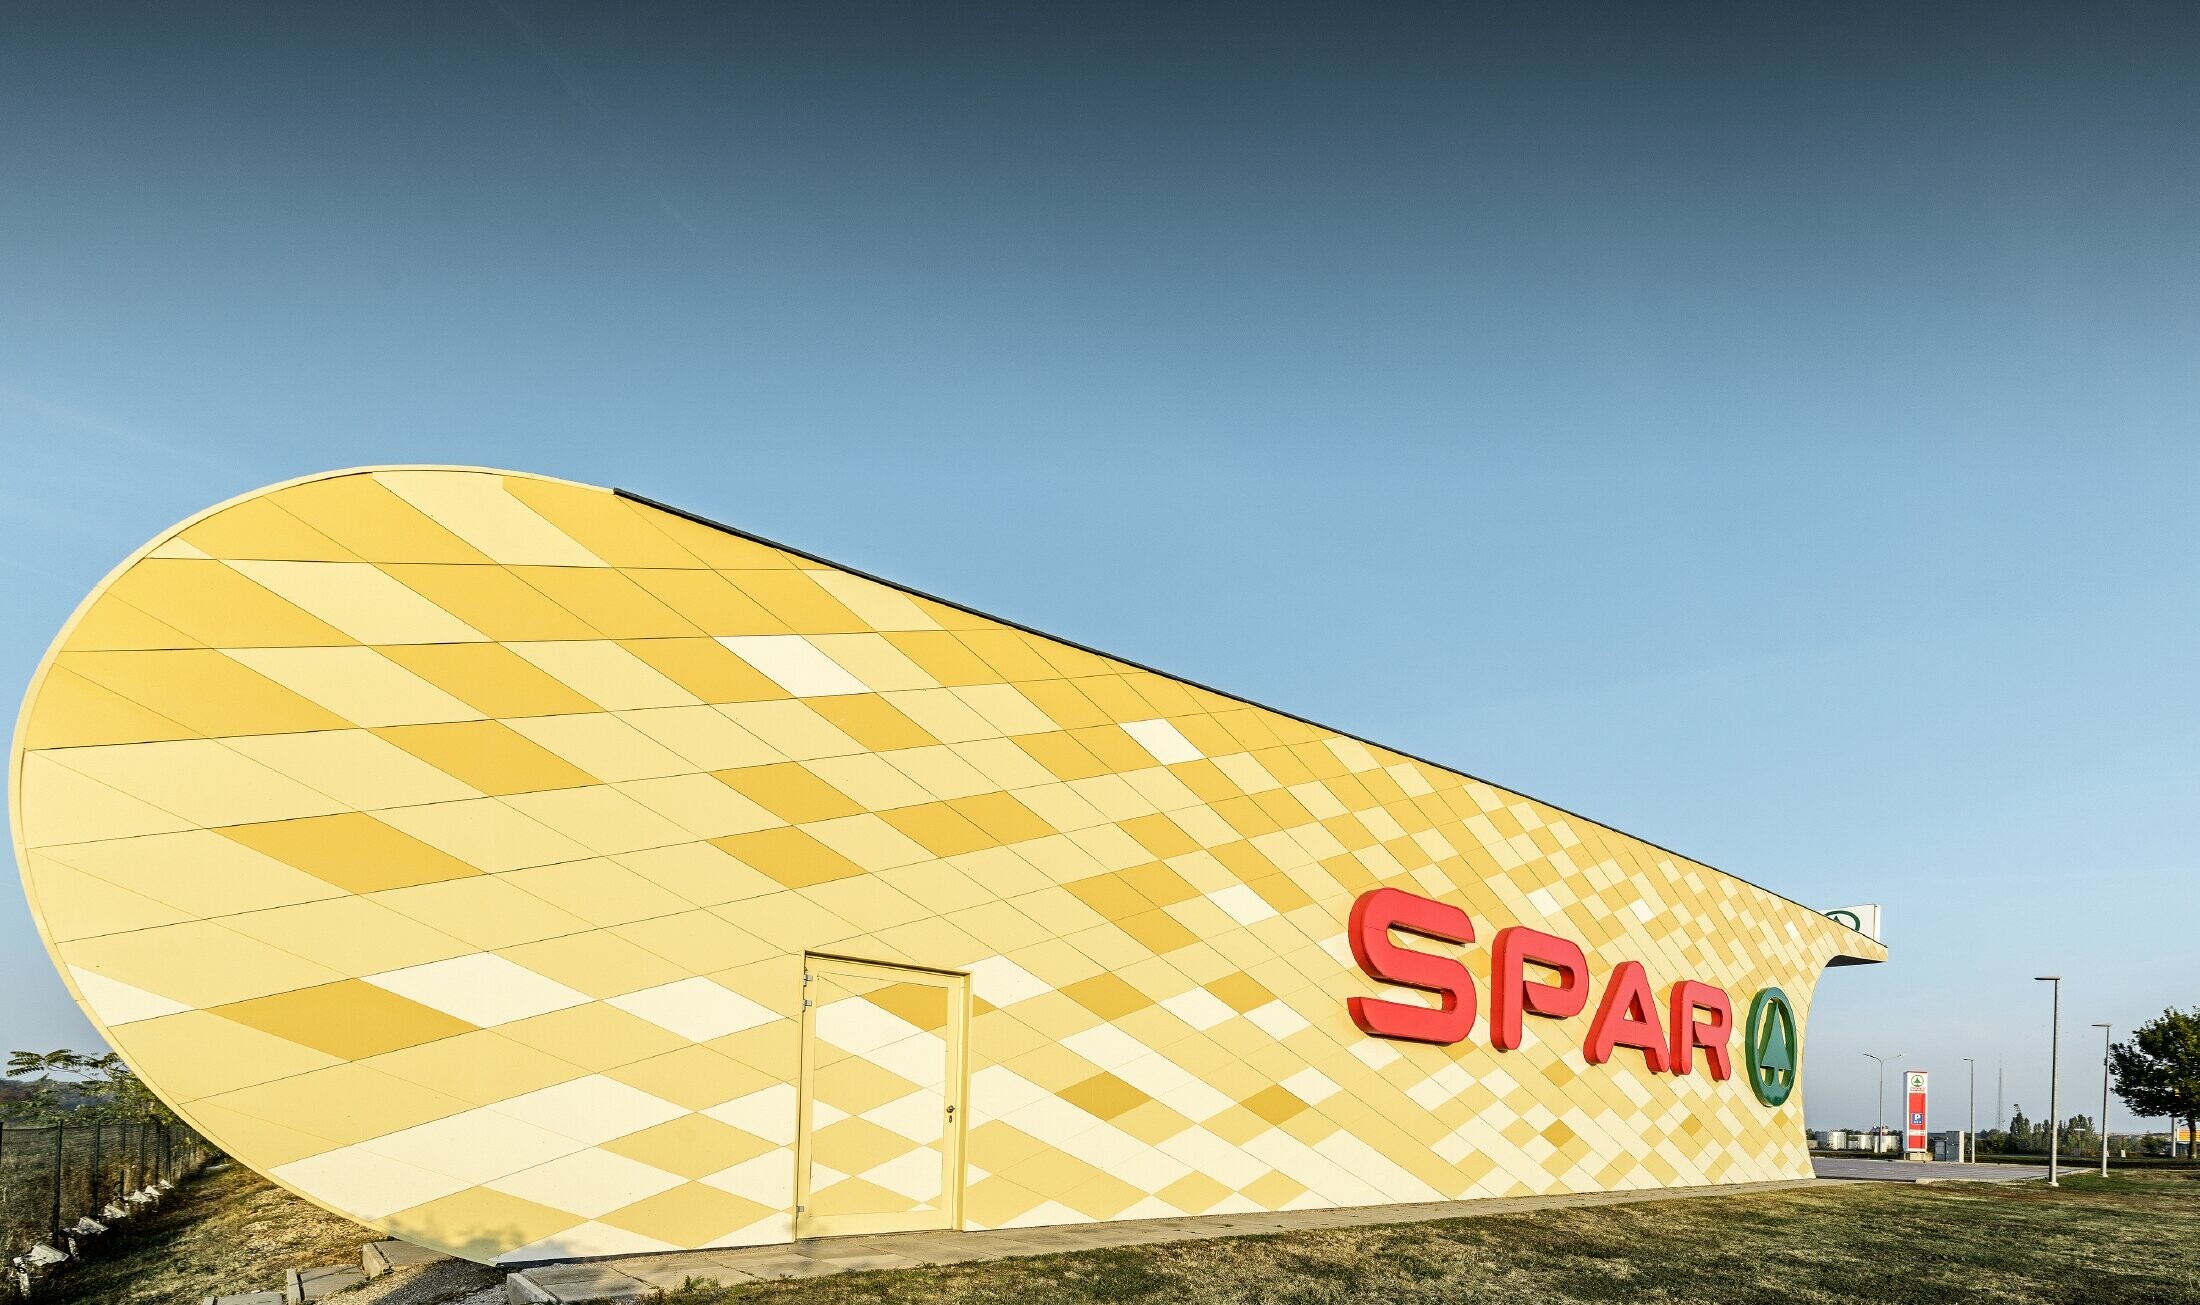 Magasin Spar — Façade en aluminium PREFA habillée de losanges jaune pâle à orange et arborant le logo Spar